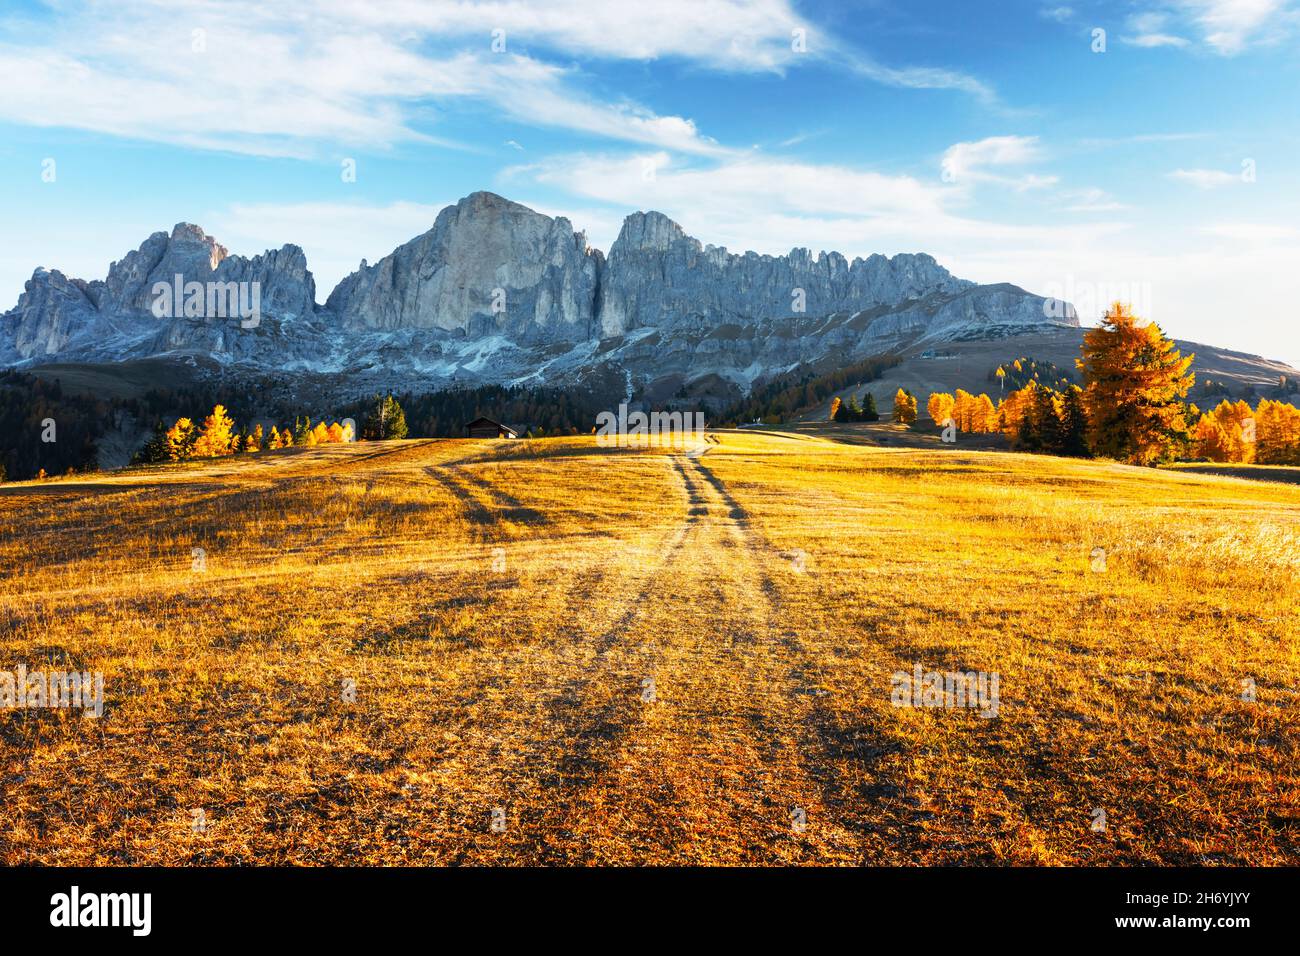 Schöne ländliche italienische Landschaft mit Herbstwiese, Holzhaus und Gipfeln der hohen Berge im Hintergrund. Nigerpass (Passo Nigra), Dolomiten, Dolomiten, Italien Stockfoto